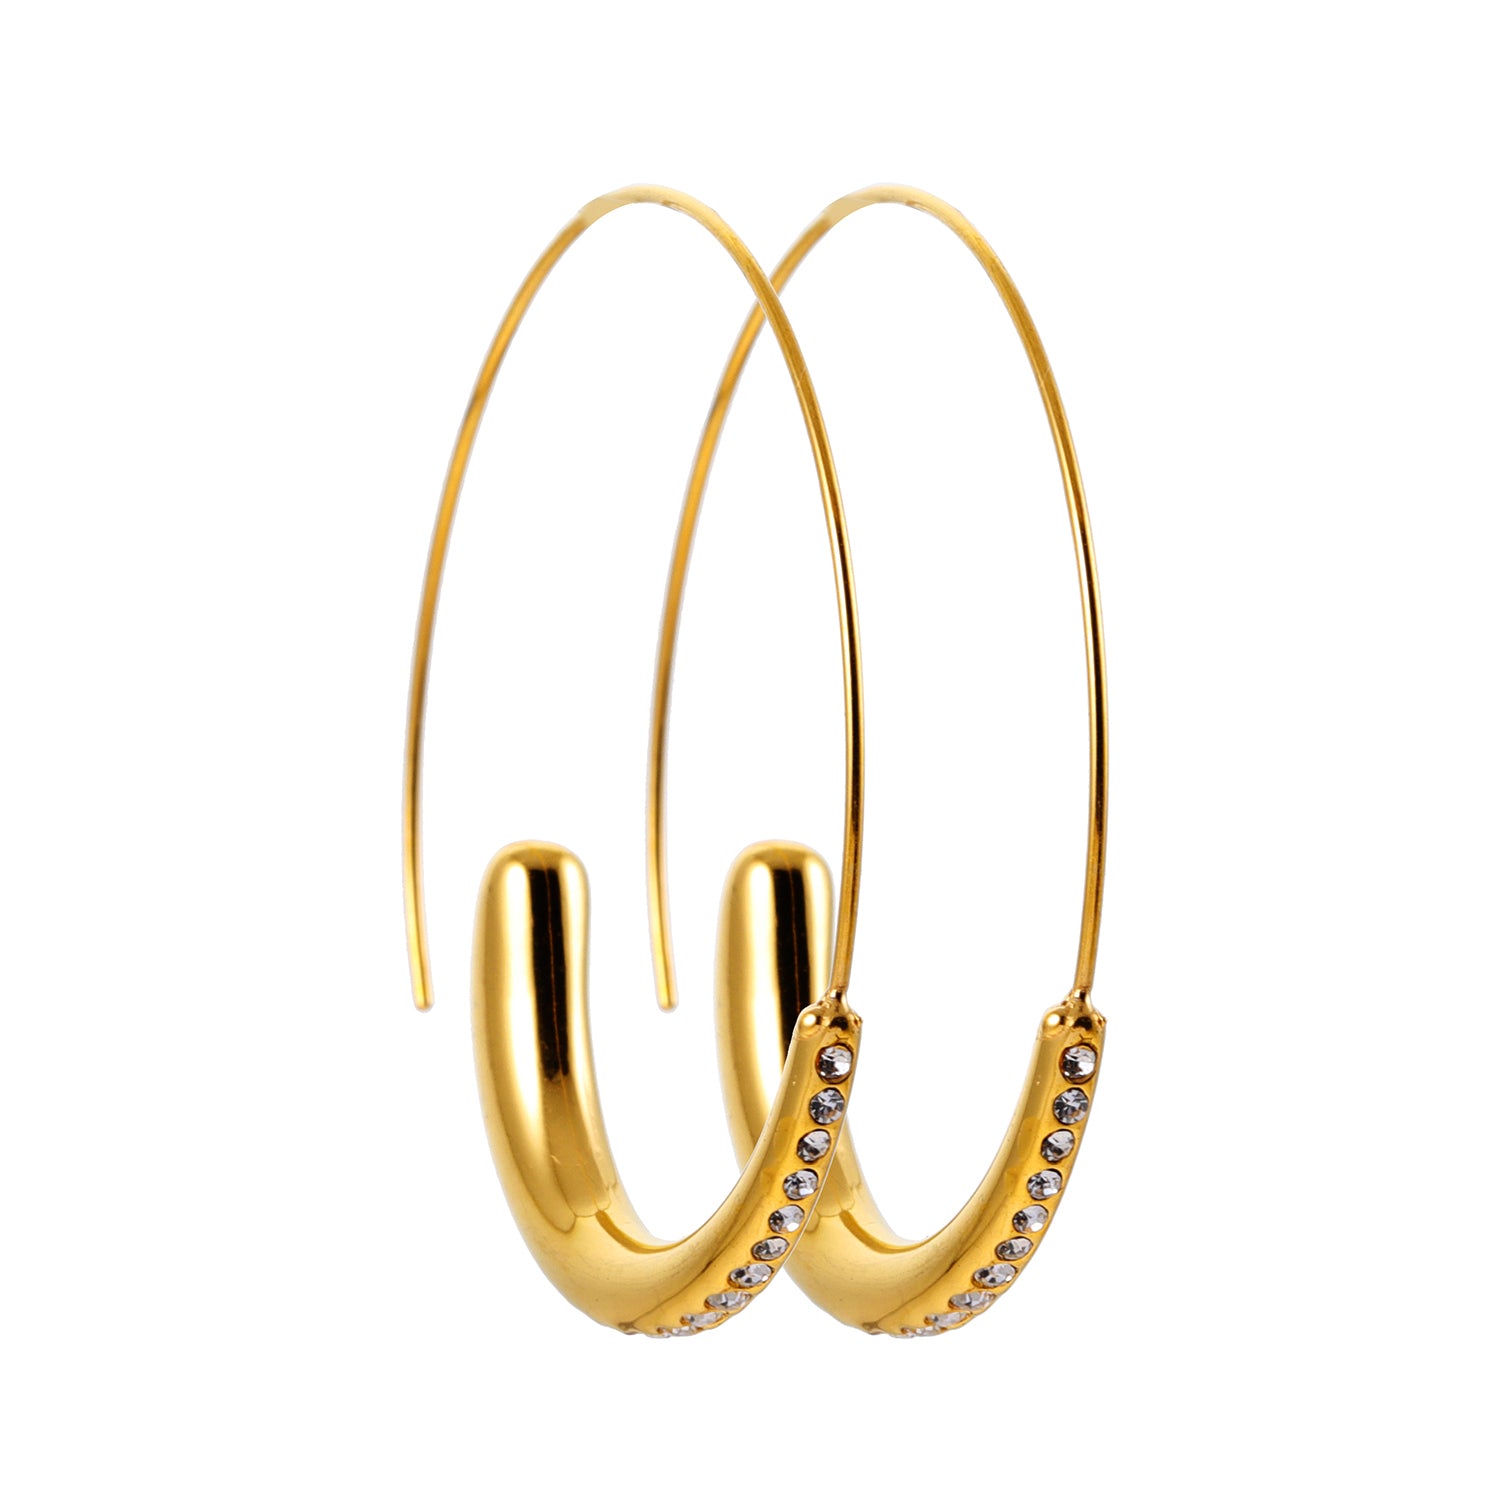 hackney-nine | hackneynine | Style LYSSA 89666: Geometric Earrings - Curved Elegance with Zirconia Sparkle.